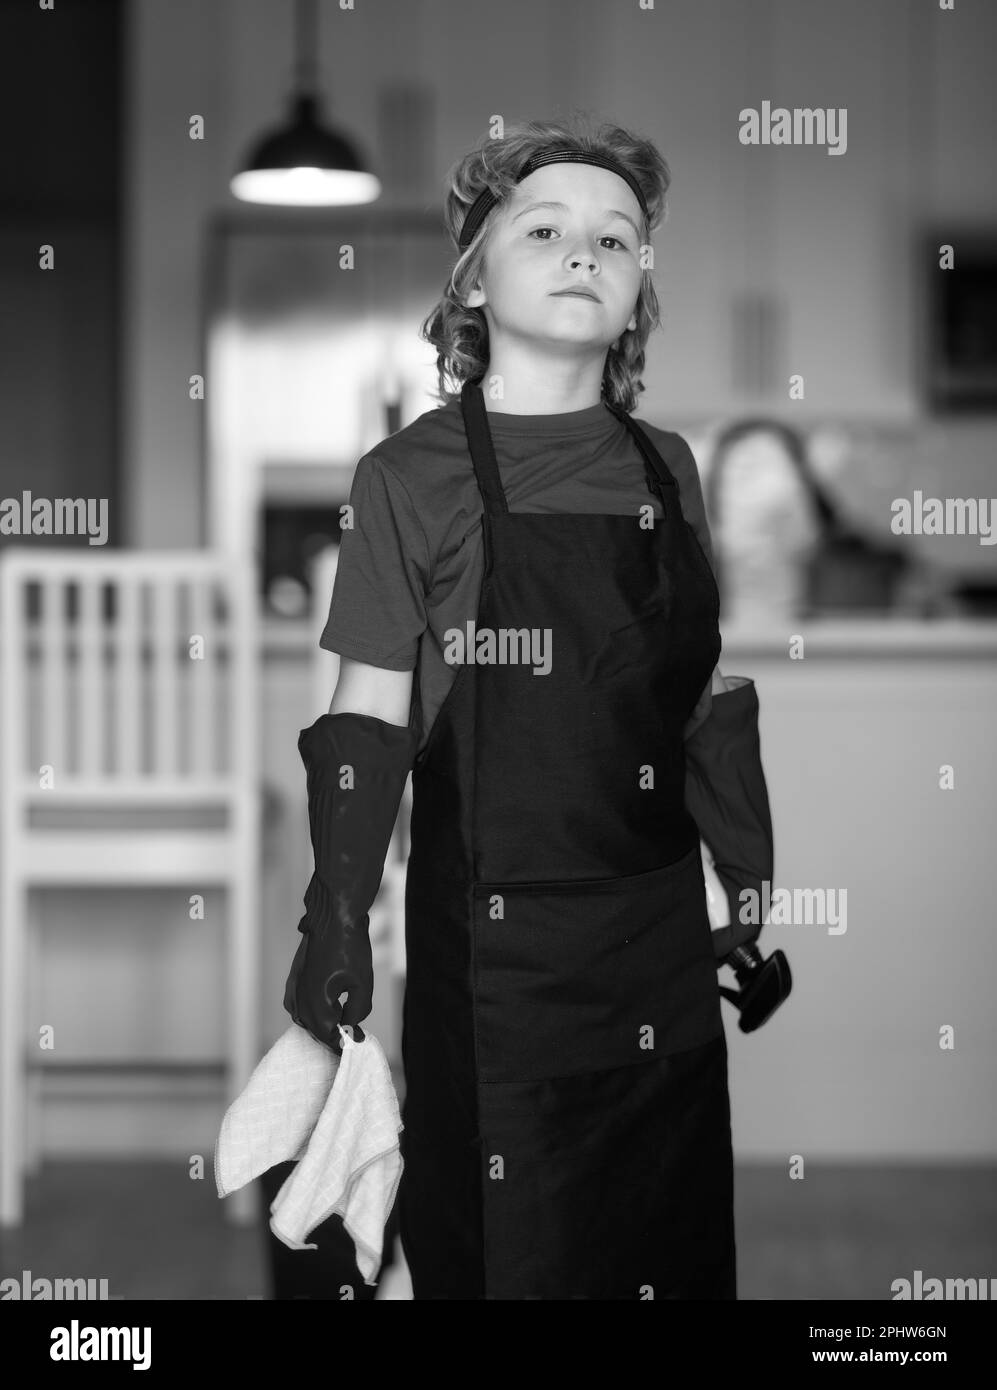 Portrait eines Kindes, das bei der Hausarbeit hilft, das Haus putzt. Housekeeping, Hausarbeiten. Stockfoto